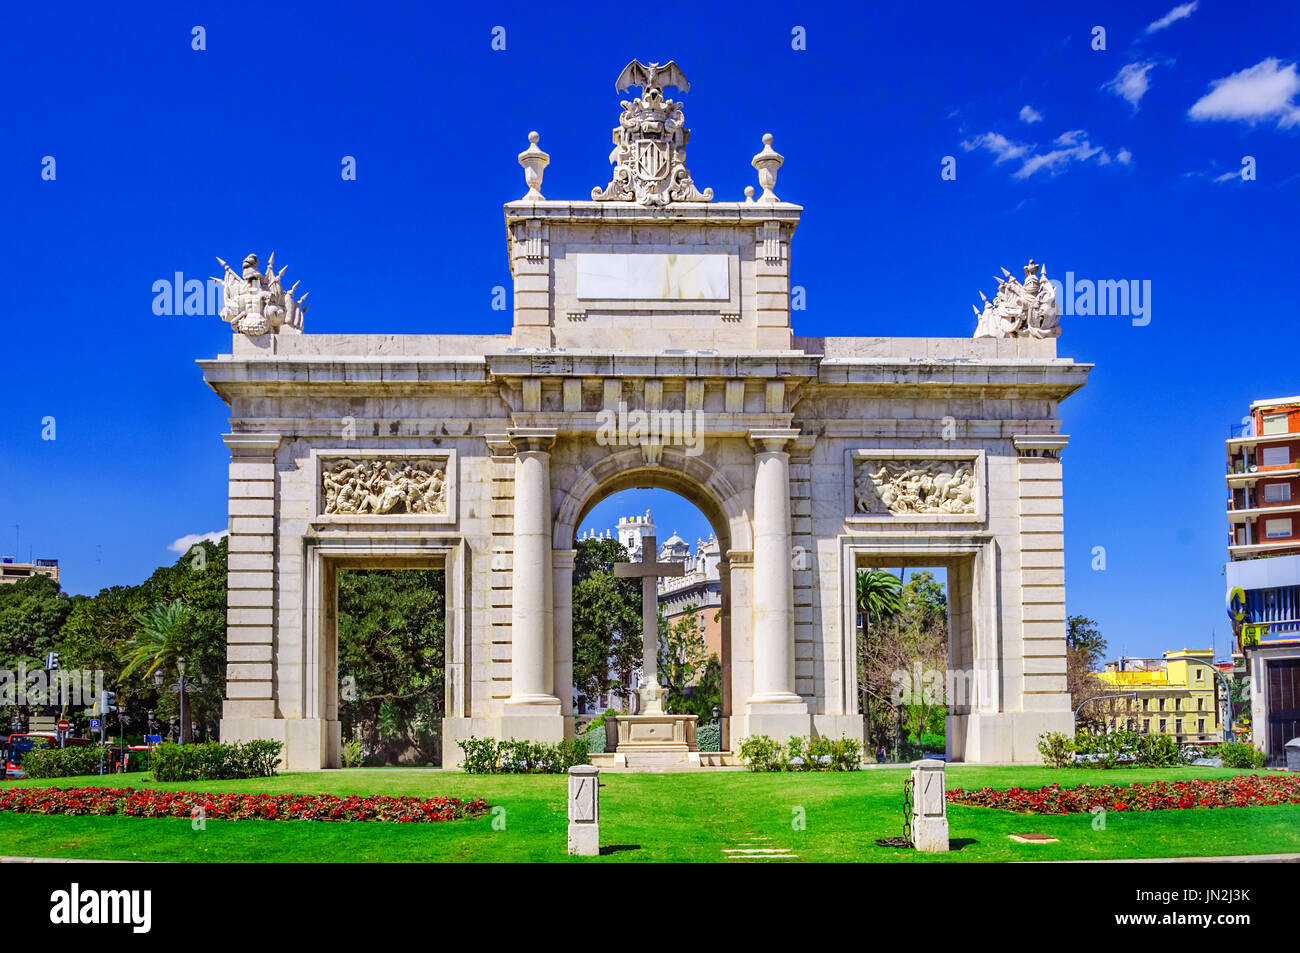 Puerta del mar, mer porte dans la ville de Valence, Espagne, Europe Banque D'Images